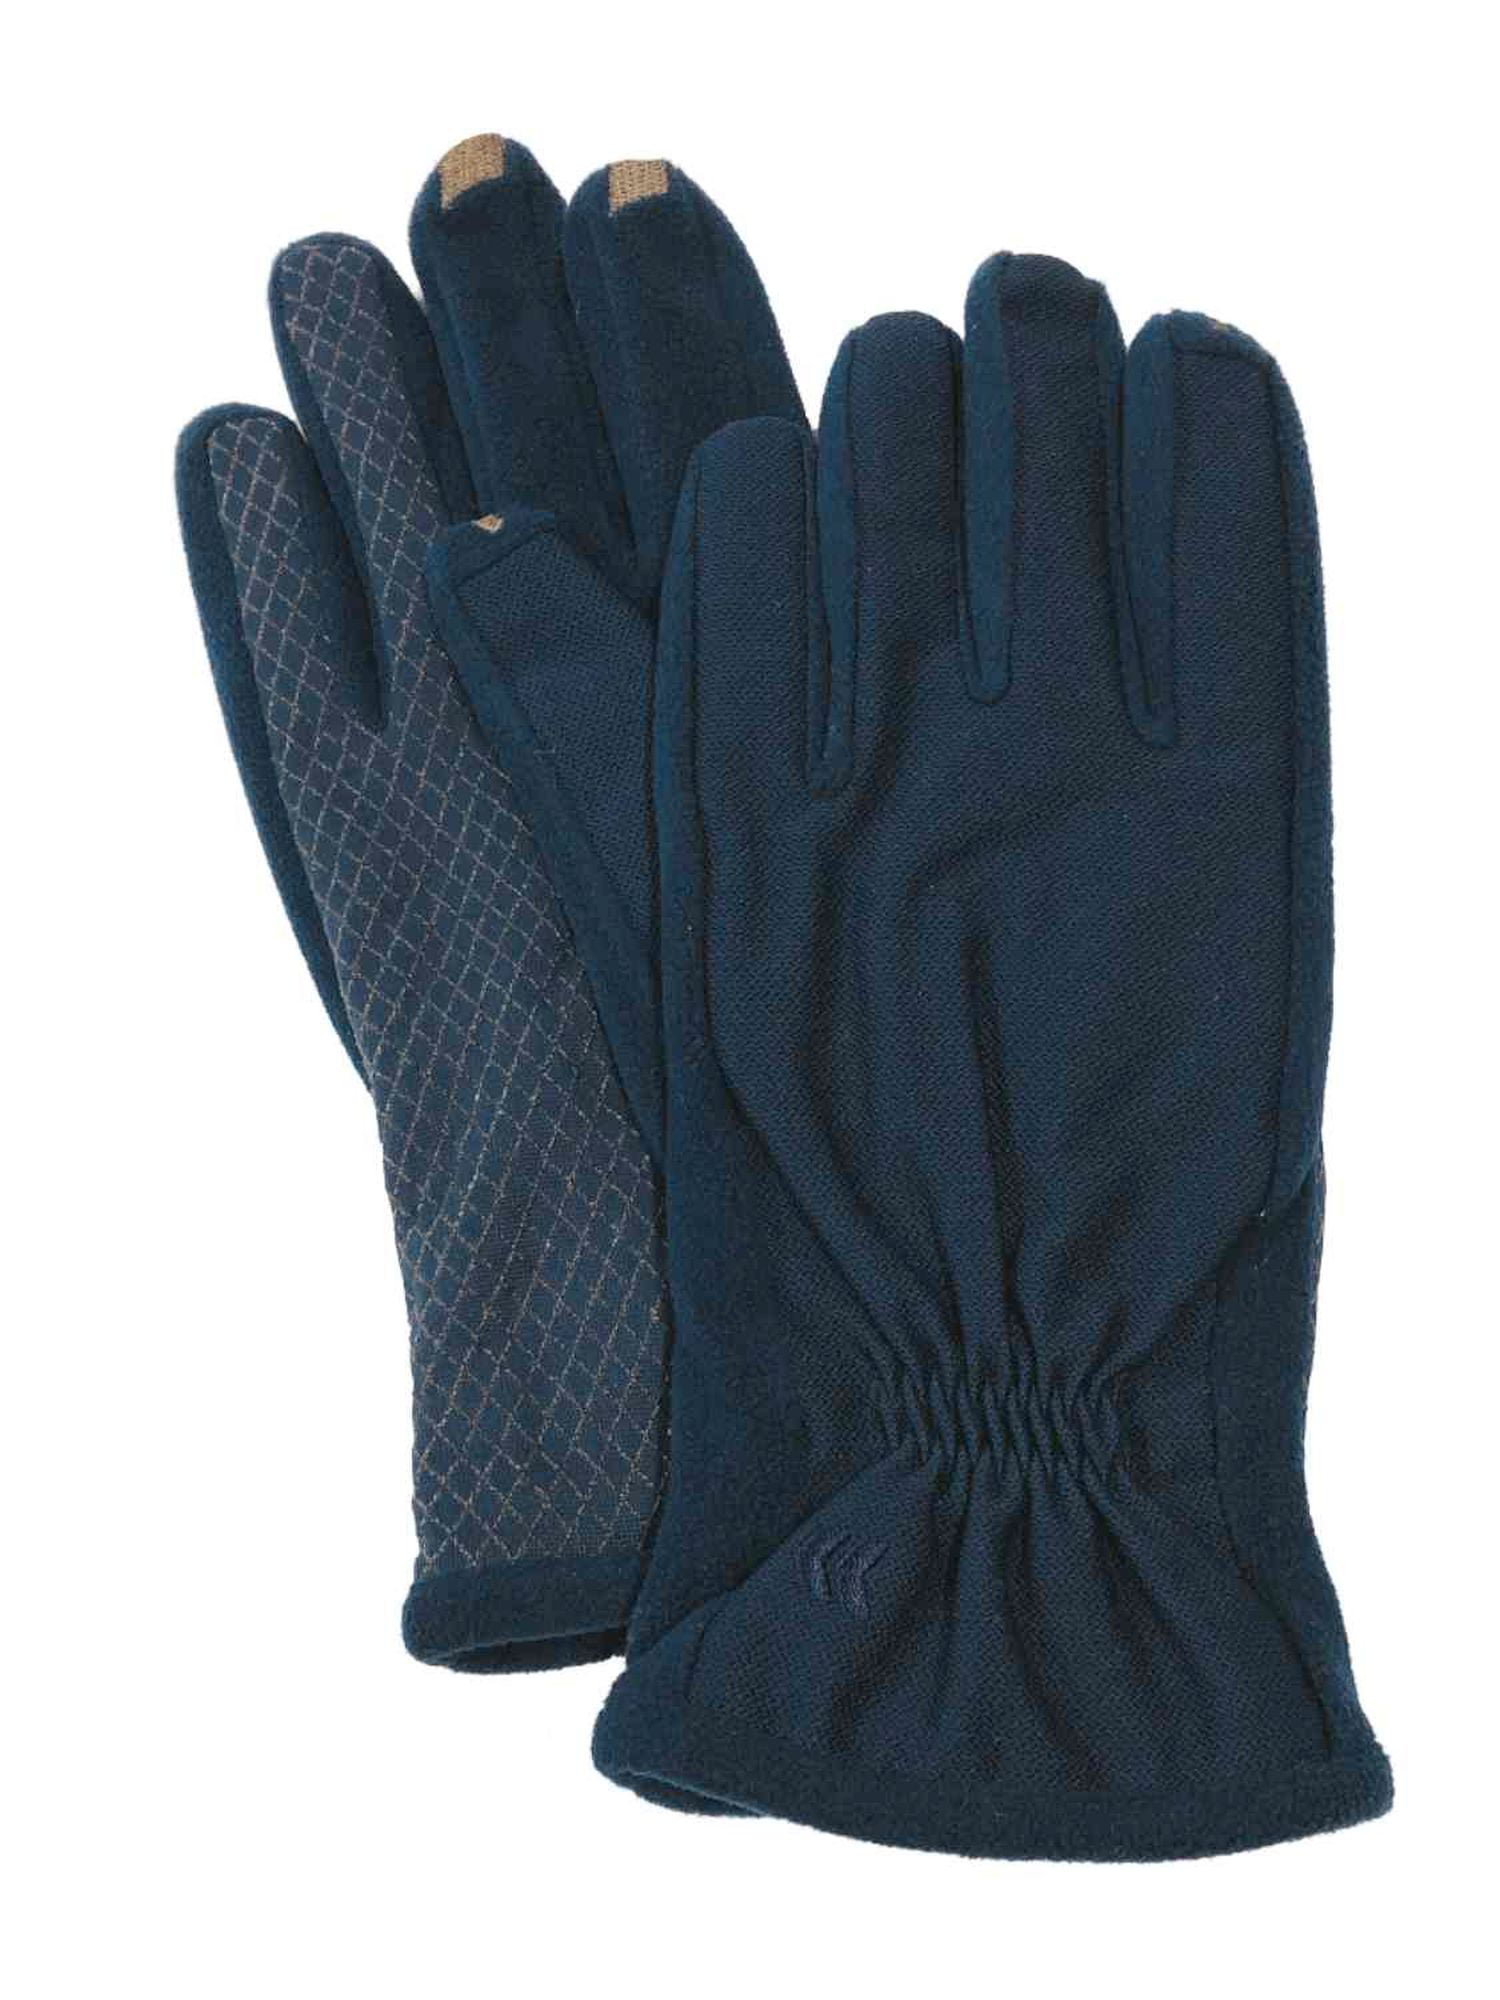 Isotoner SmarTouch Sleek Heat Packable Touch Screen Ski Tech Gloves L/XL #6041 